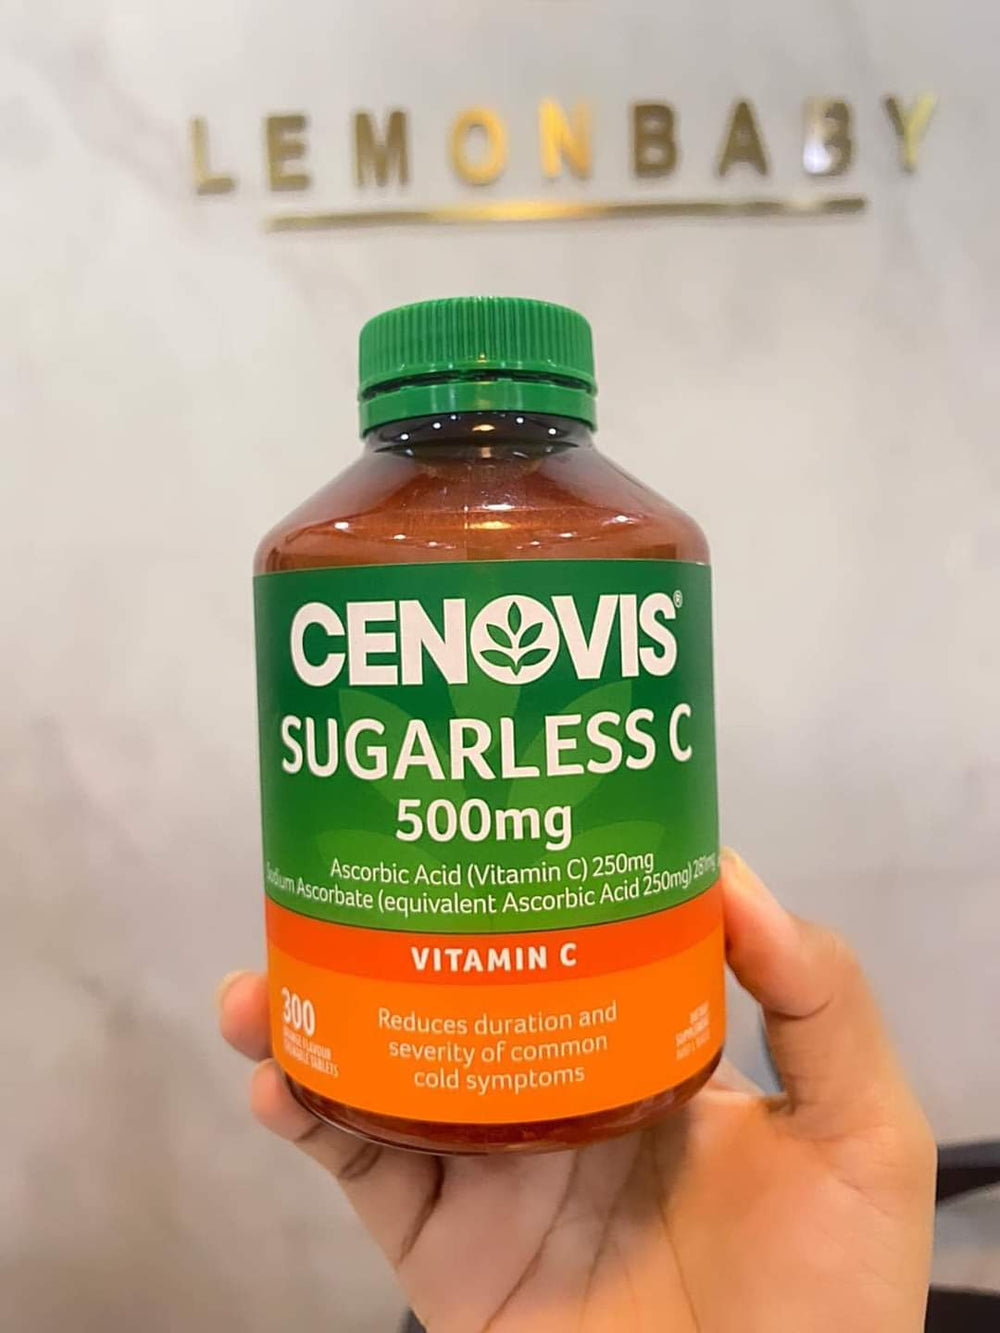 Cenovis sugarless Vitamin C - Lemonbaby